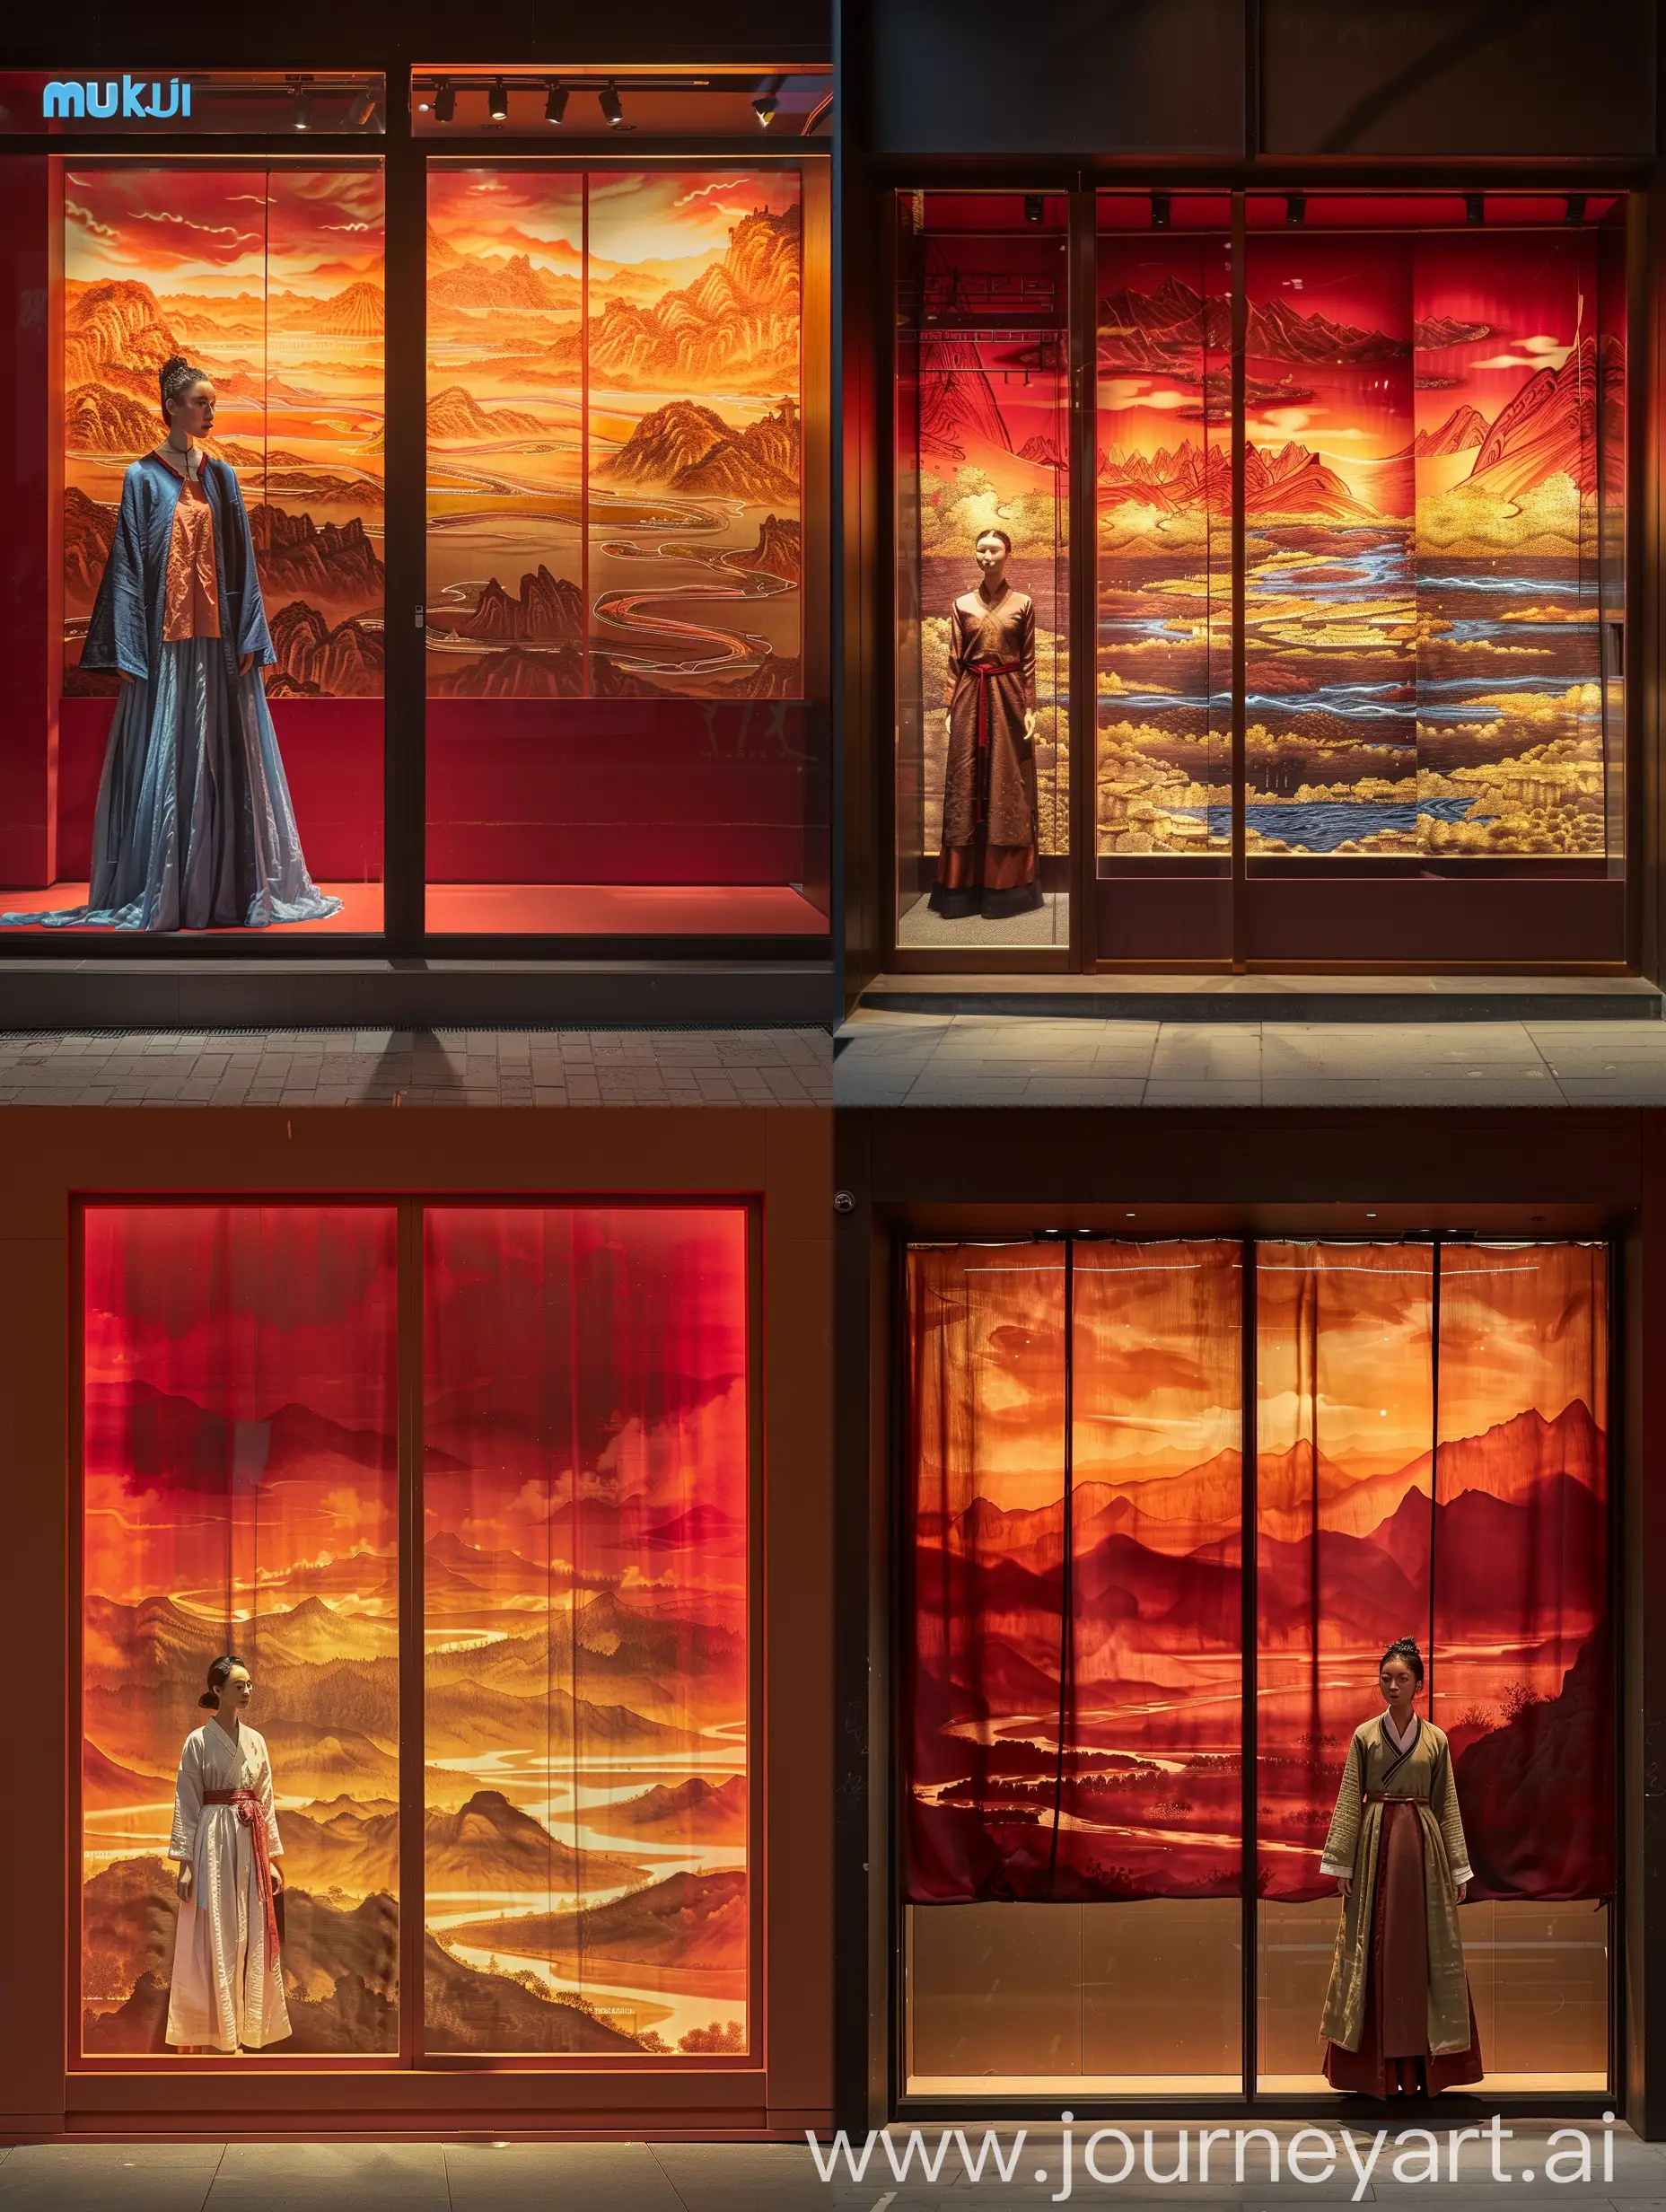  在西安城内有一个无印良品的店铺橱窗，橱窗是两层的，第一层是深红色背景前站有身着盛唐服装的模特；第二层一幅千里江山图，有暖色的背景光